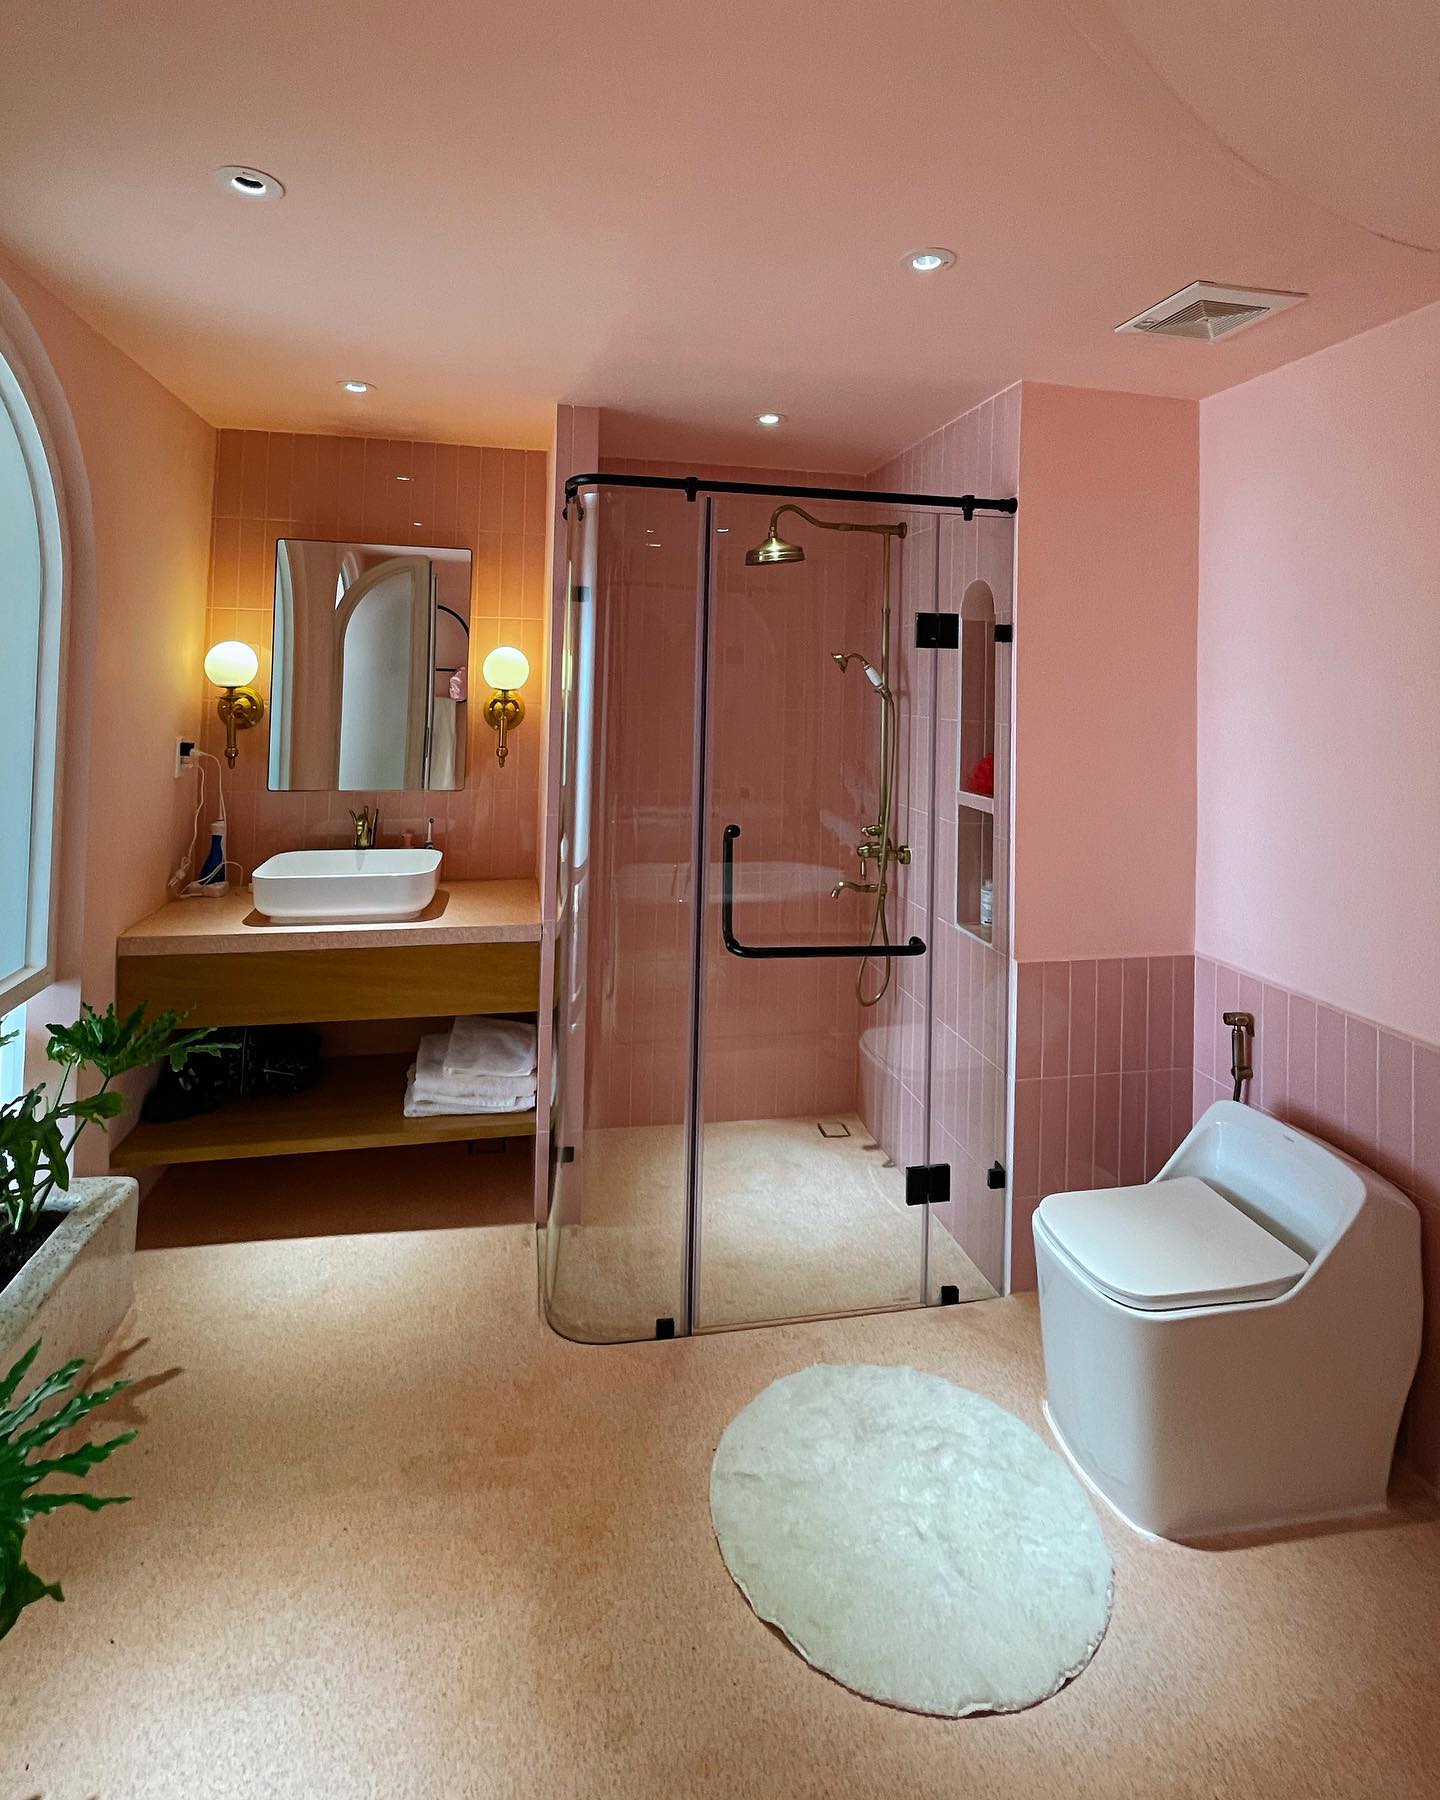 Phòng tắm màu hồng ngọt ngào và thời thượng.